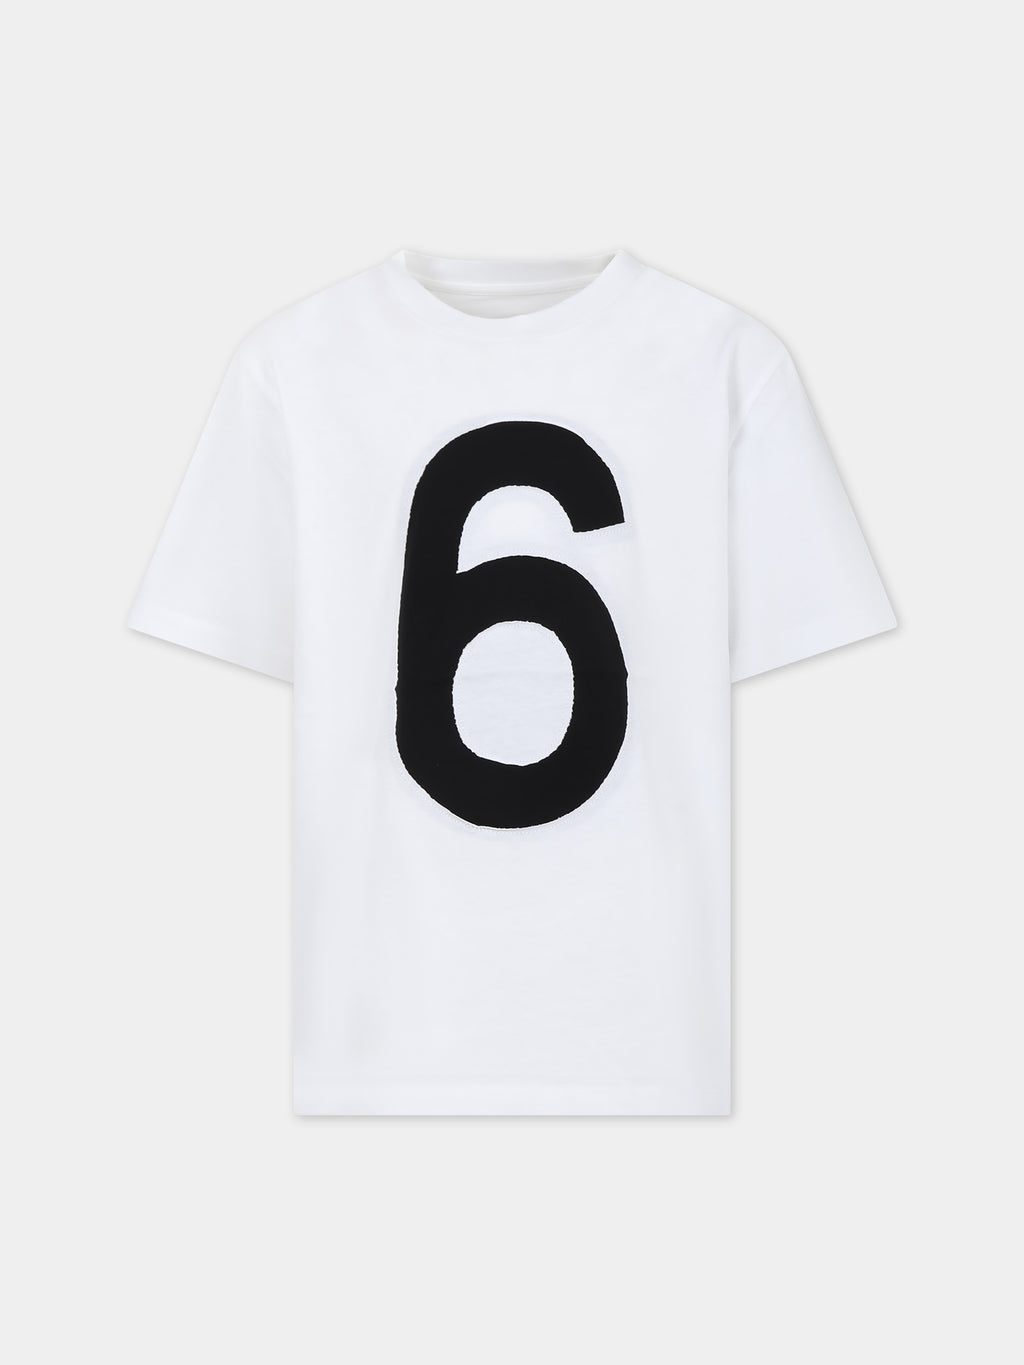 T-shirt blanc pour enfants avec numéro 6